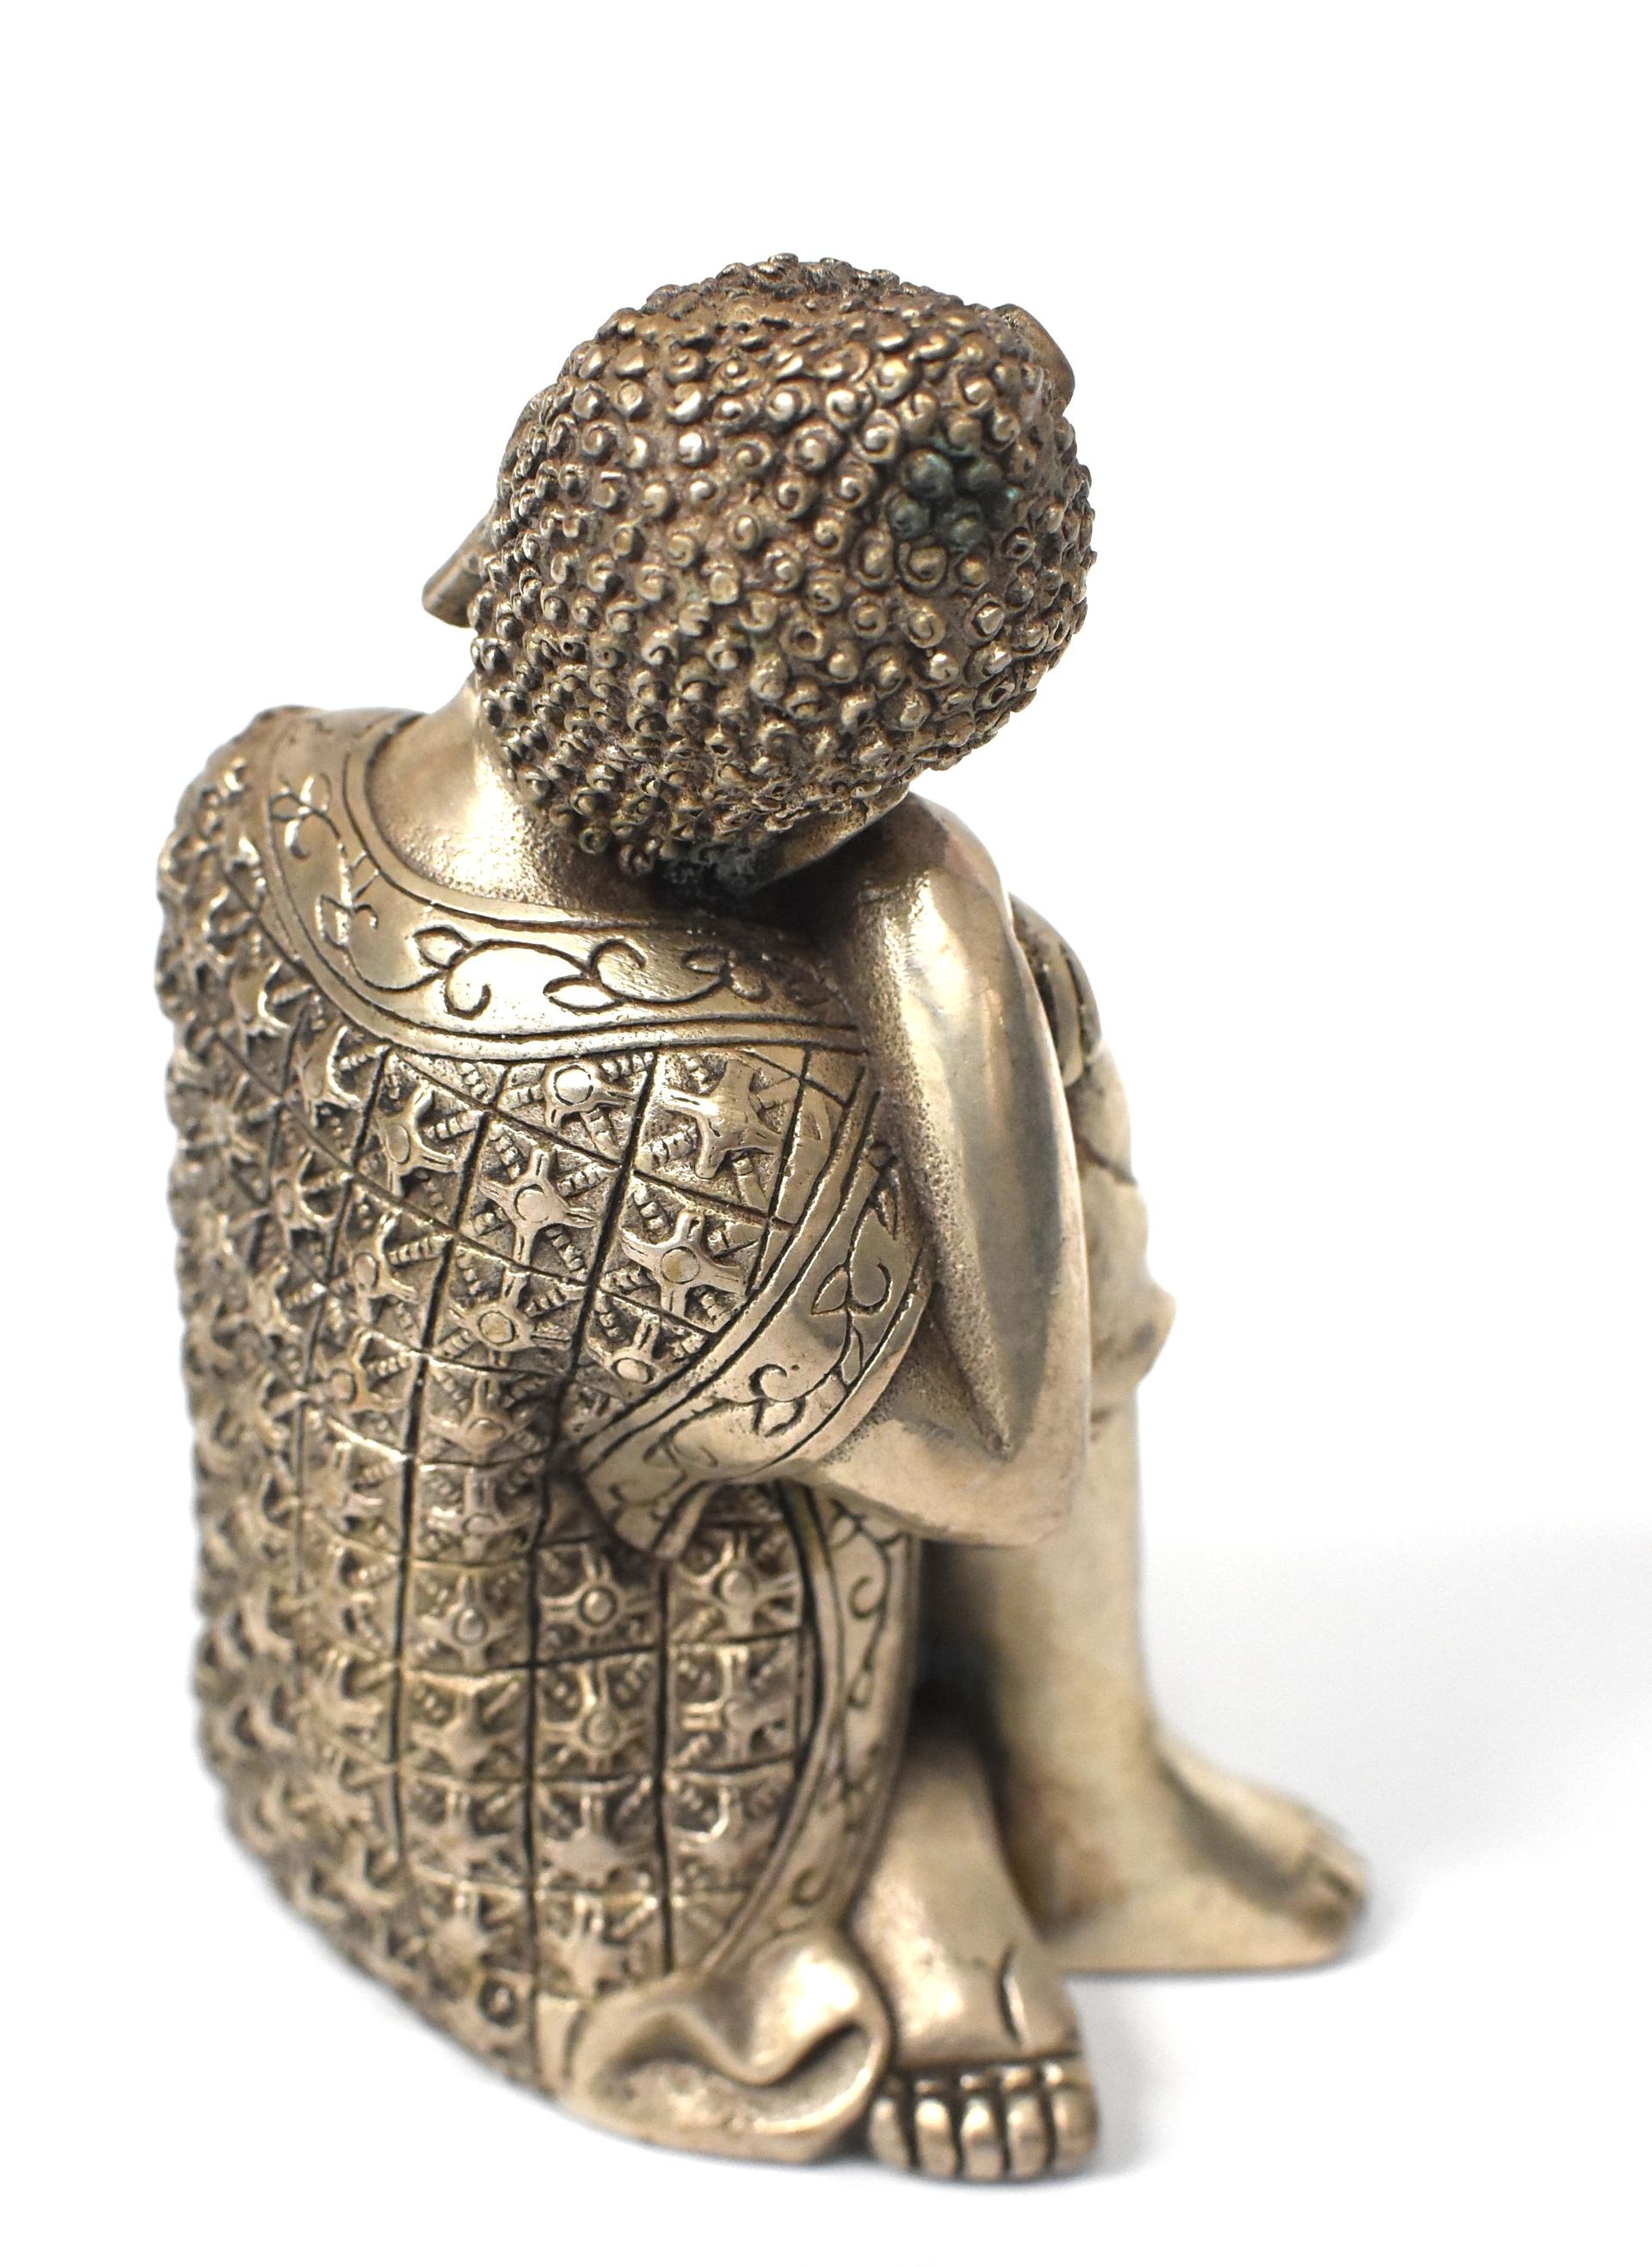 Silvered Brass Buddha Statue, a Thinking Buddha 12